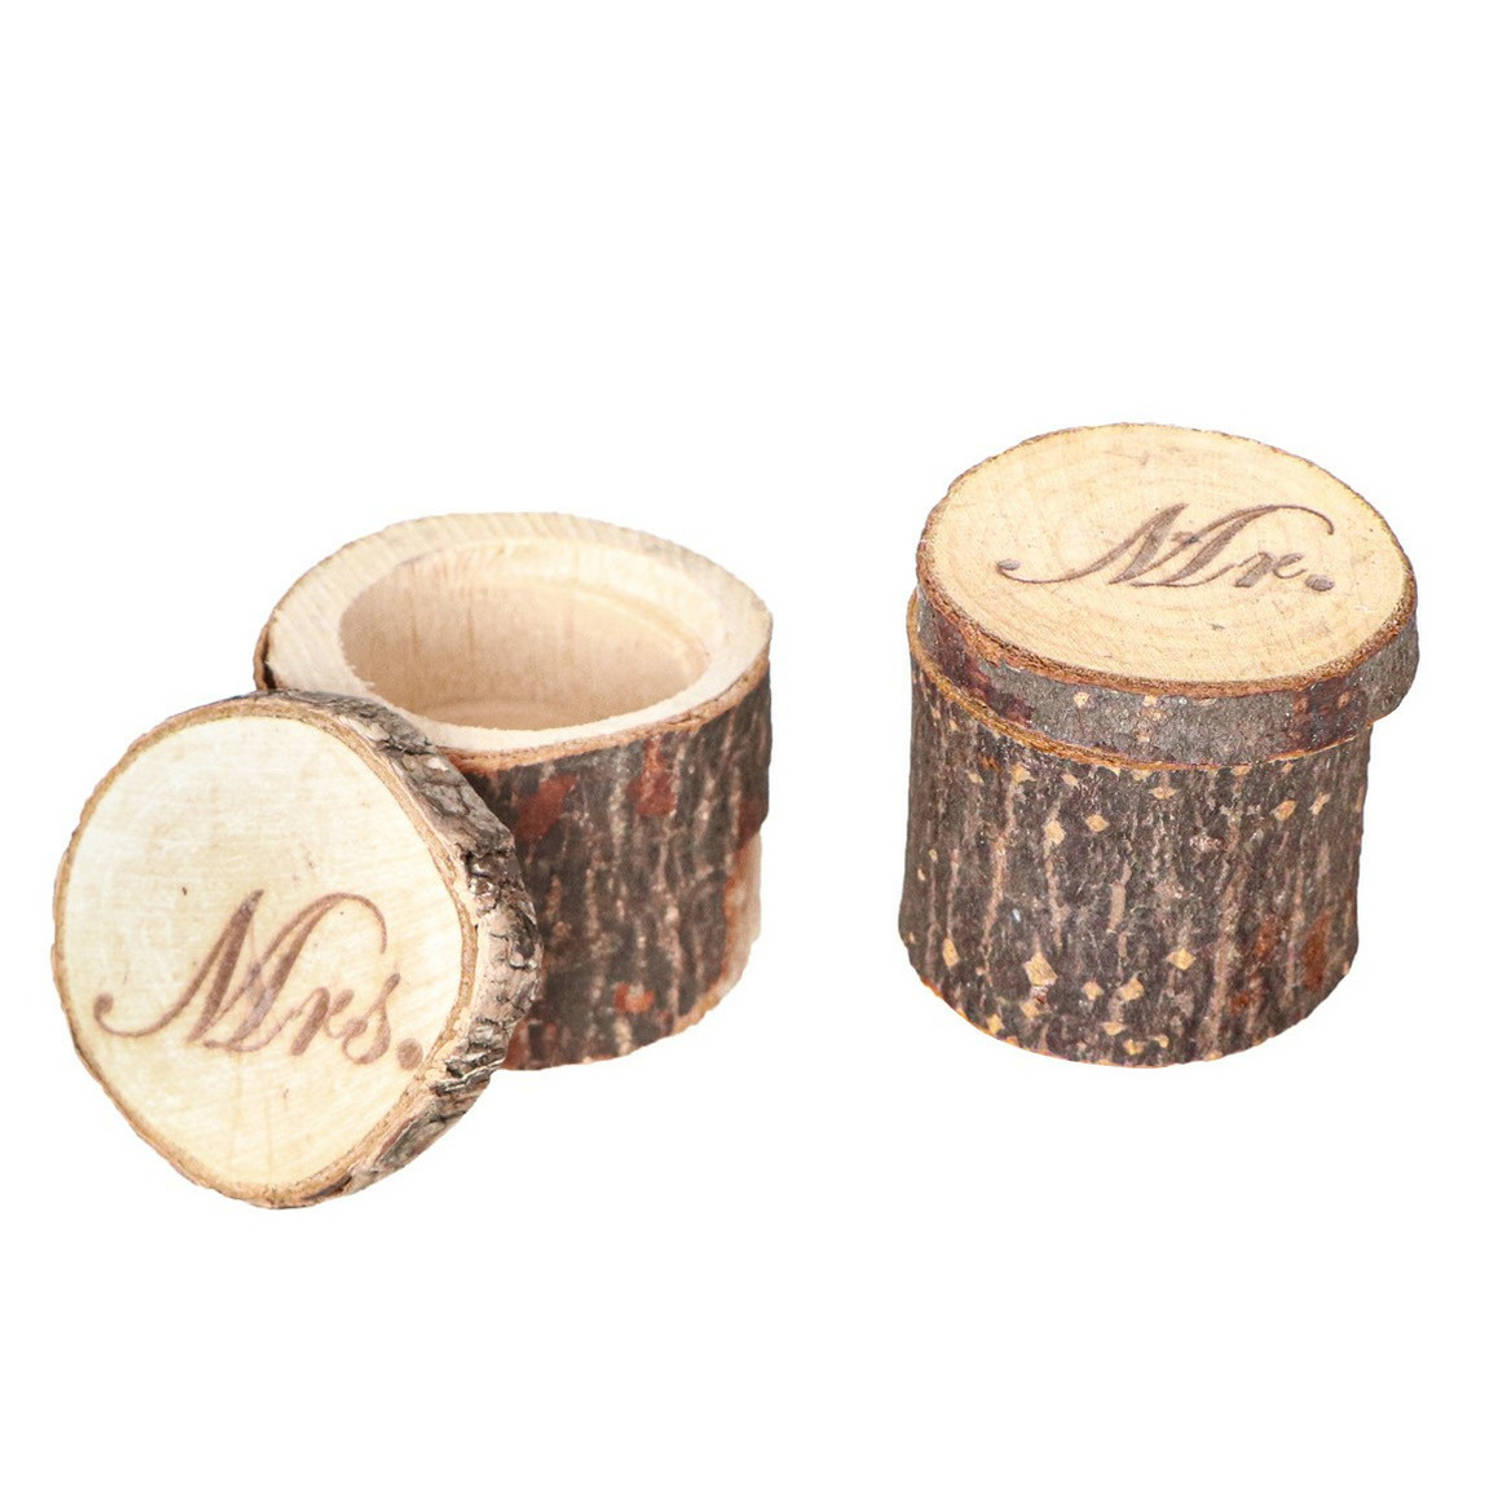 Chaks Bruiloft-huwelijk trouwringen boomstammetje hout MR & MRS ringdoosje D6 x H4 cm Feestdecoratie